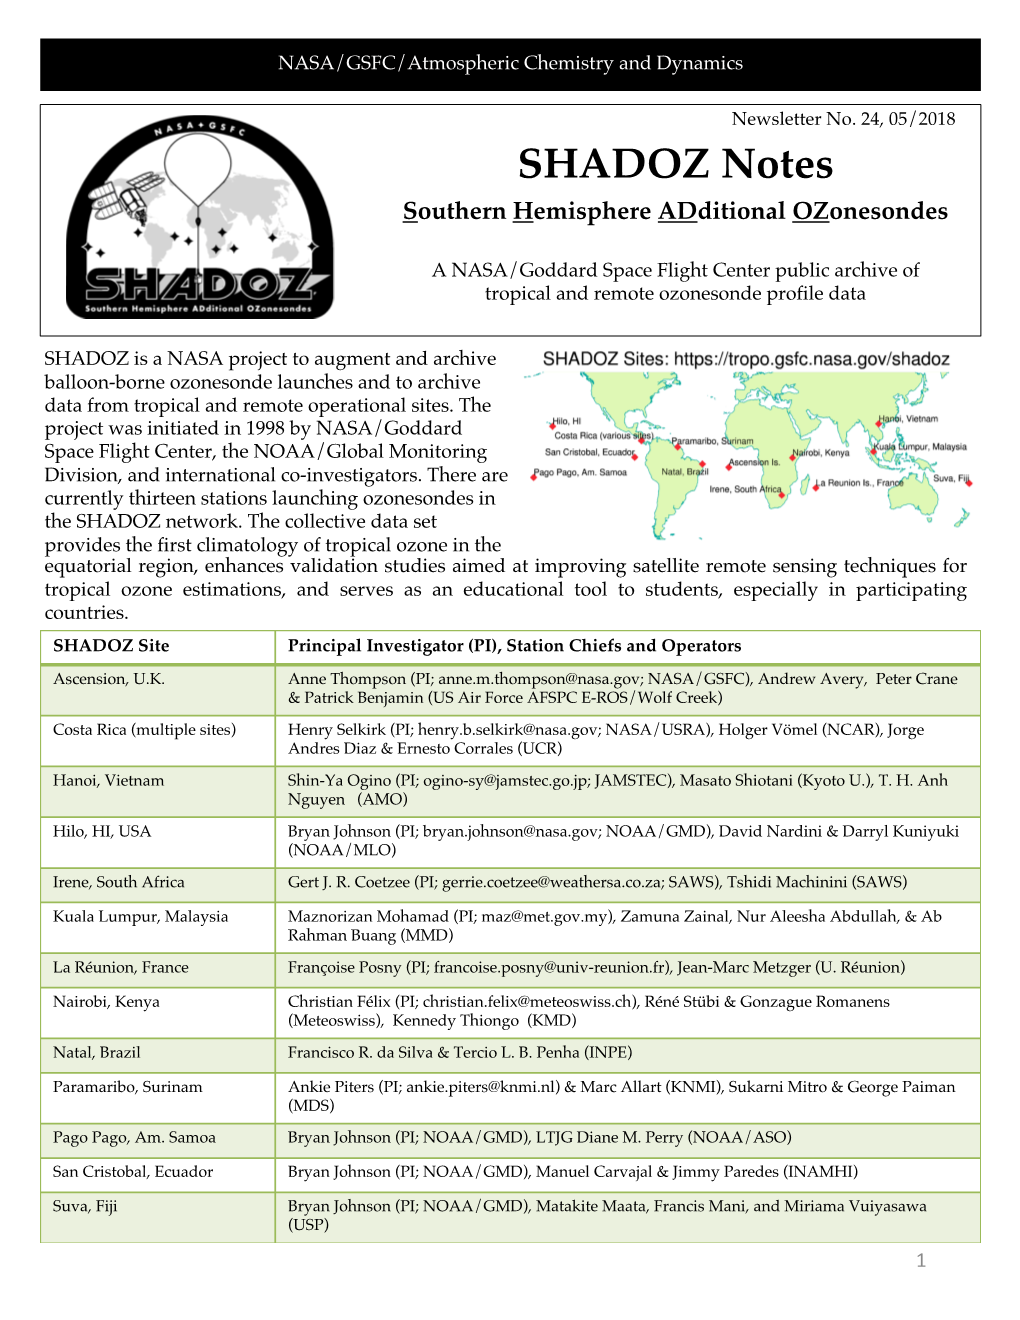 SHADOZ Newsletter No